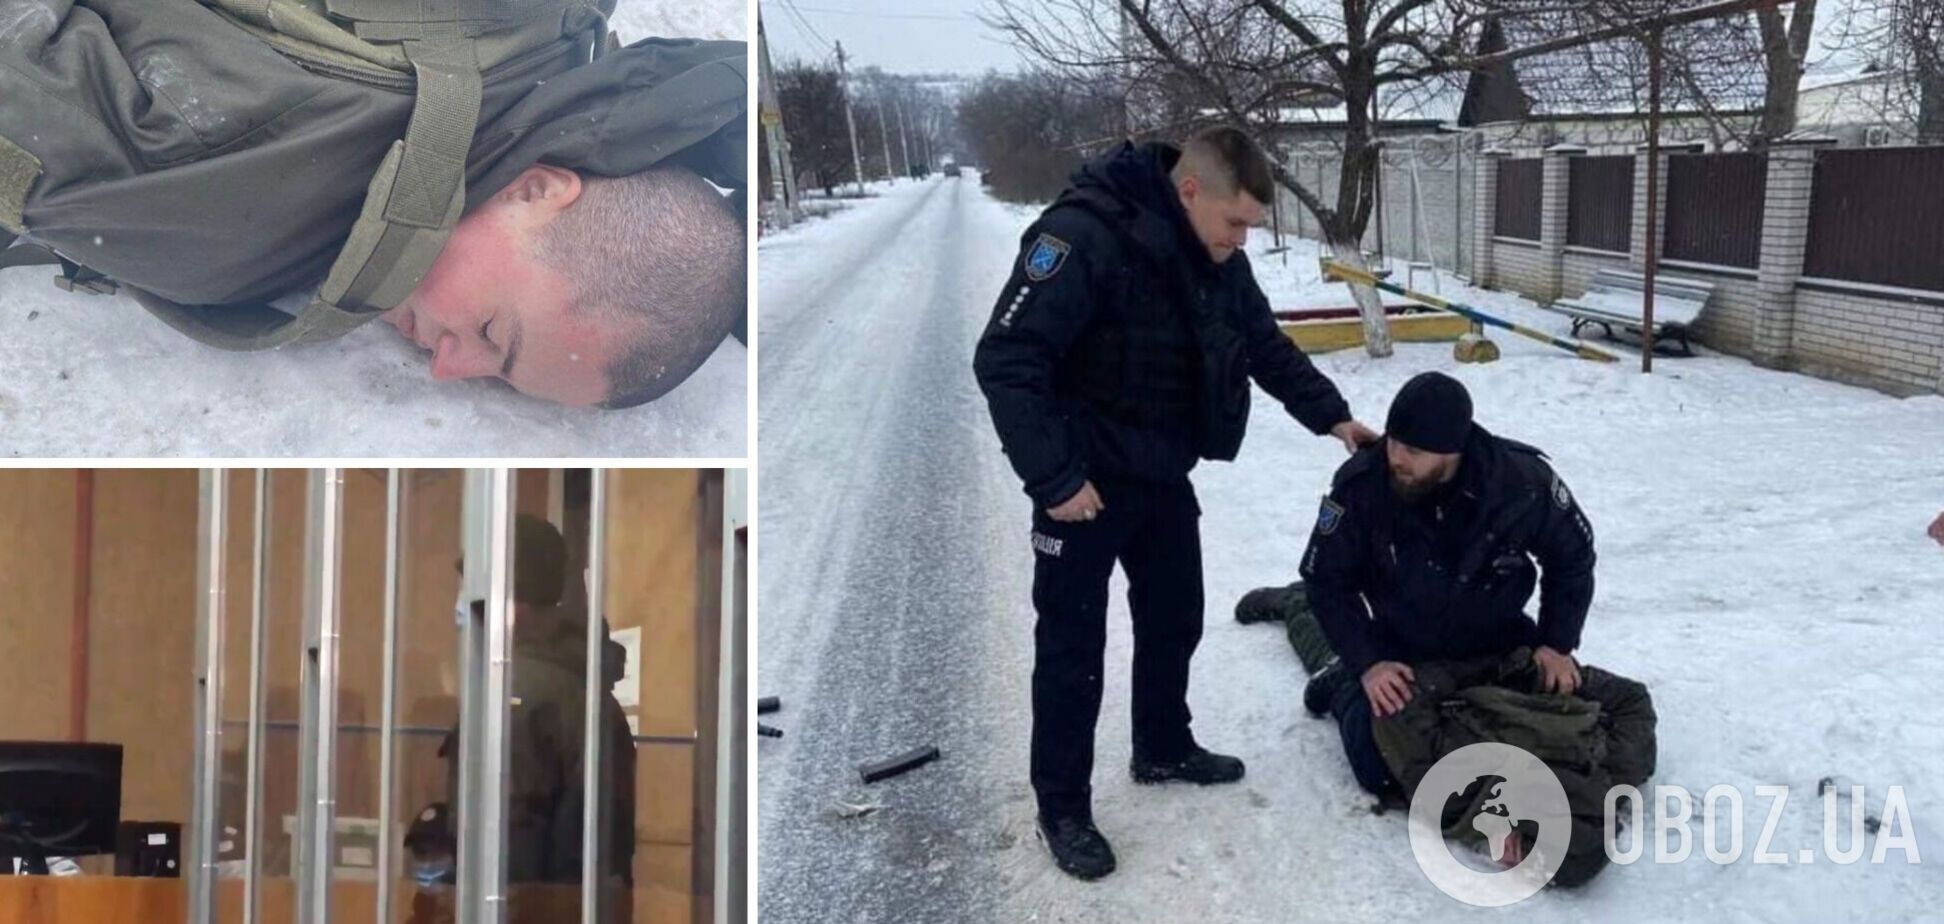 'Мне искренне жаль': расстрелявший сослуживцев Артемий Рябчук признал свою вину. Видео